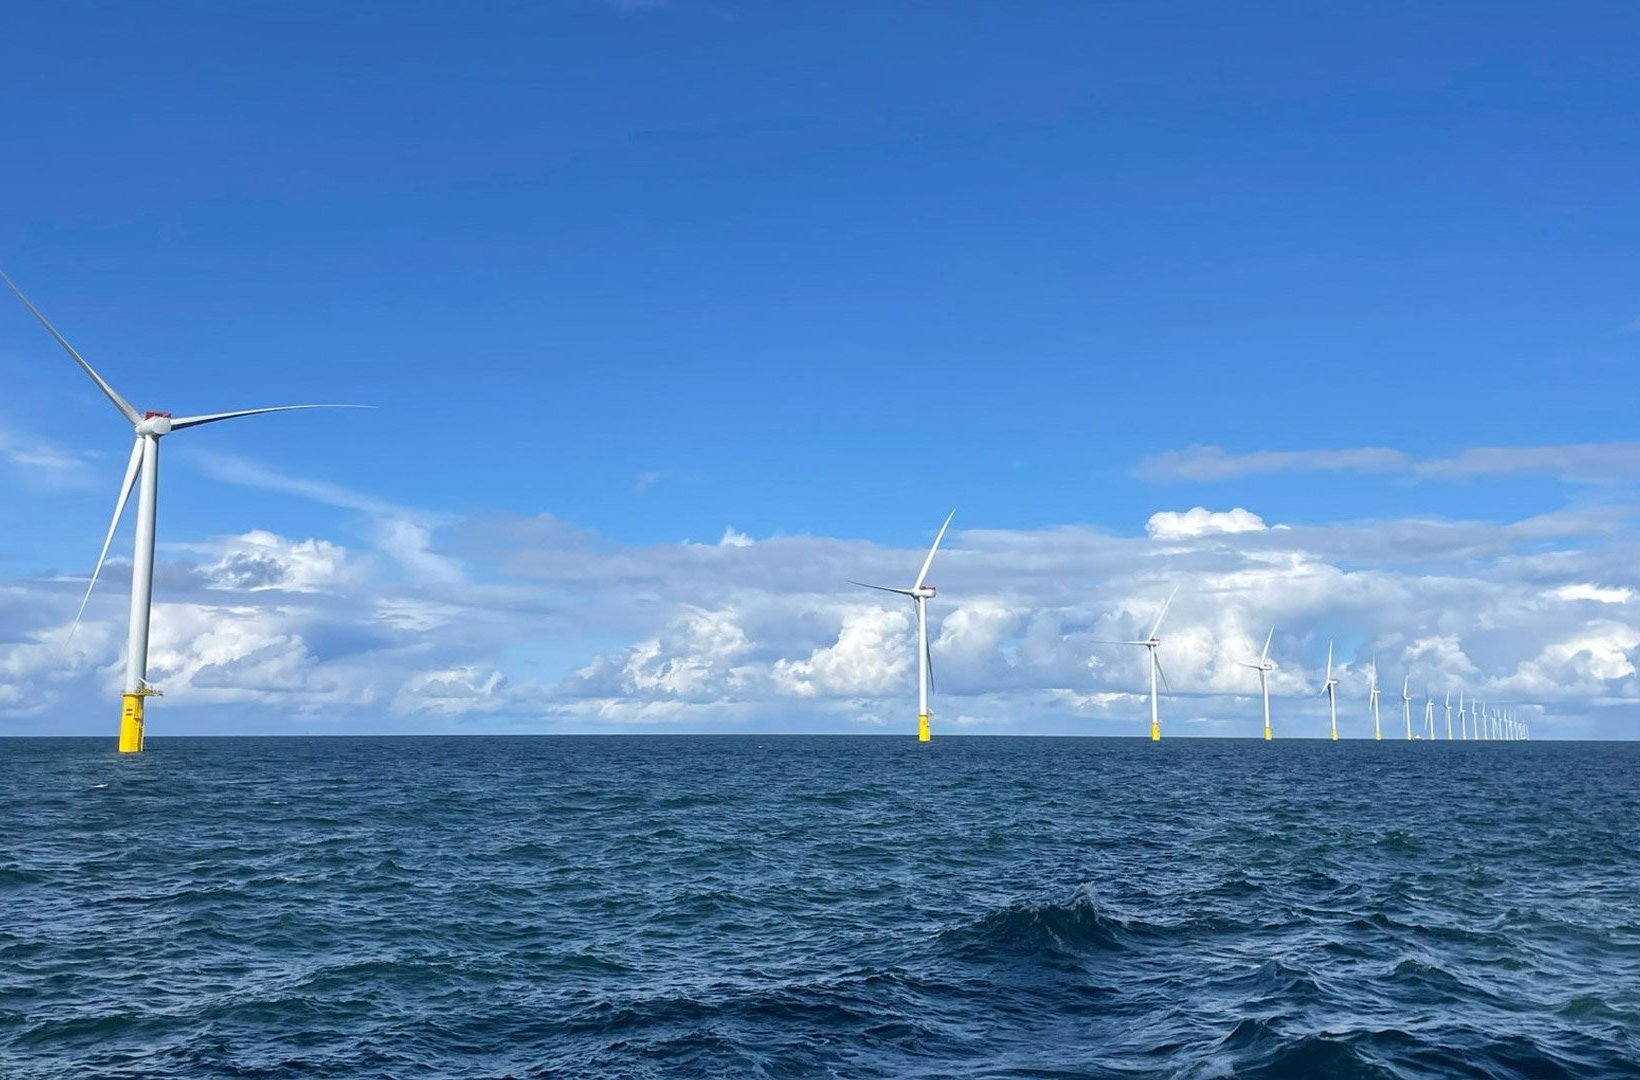 Vattenfall's offshore wind farm Vesterhav Syd